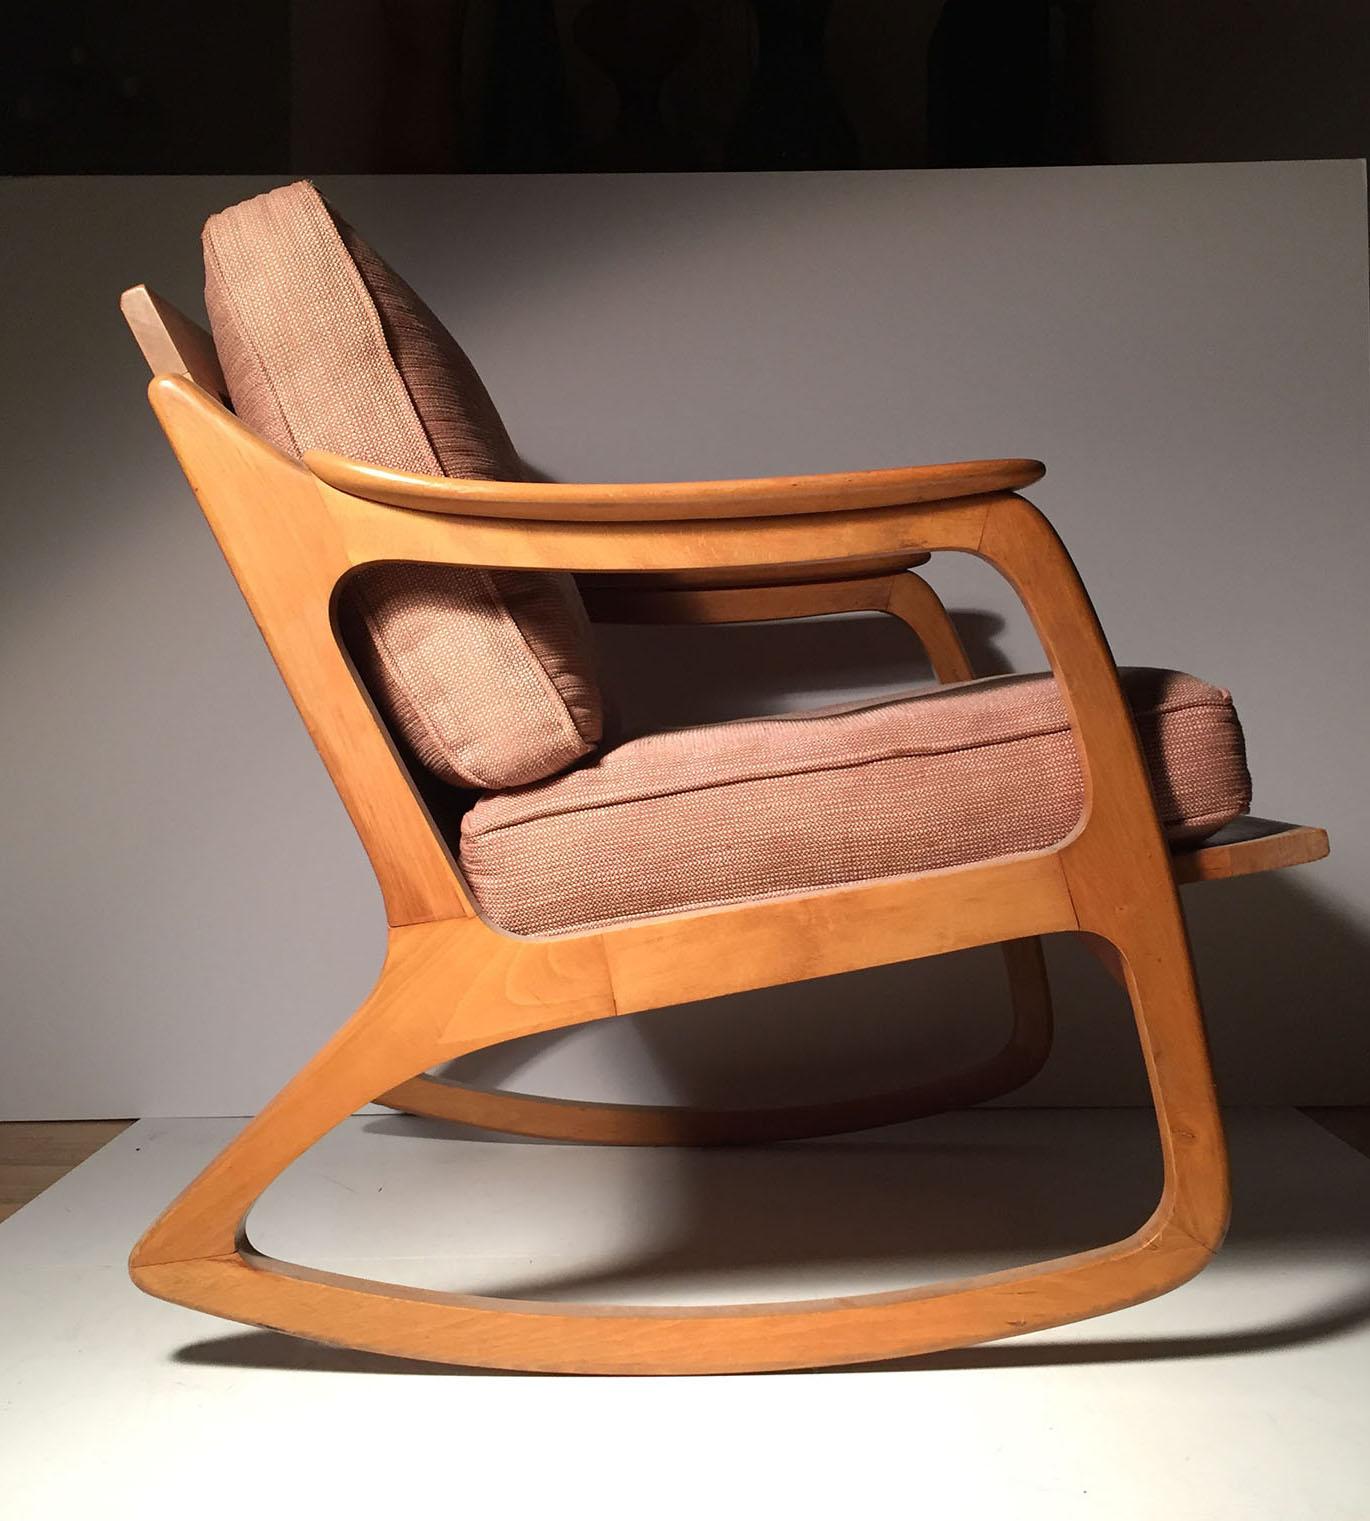 Adorable forme de chaise par Lawrence Peabody. Bien construit. Dans le style du Danish Modern, du design scandinave, d'Adrian Pearsall, de Milo Baughman.